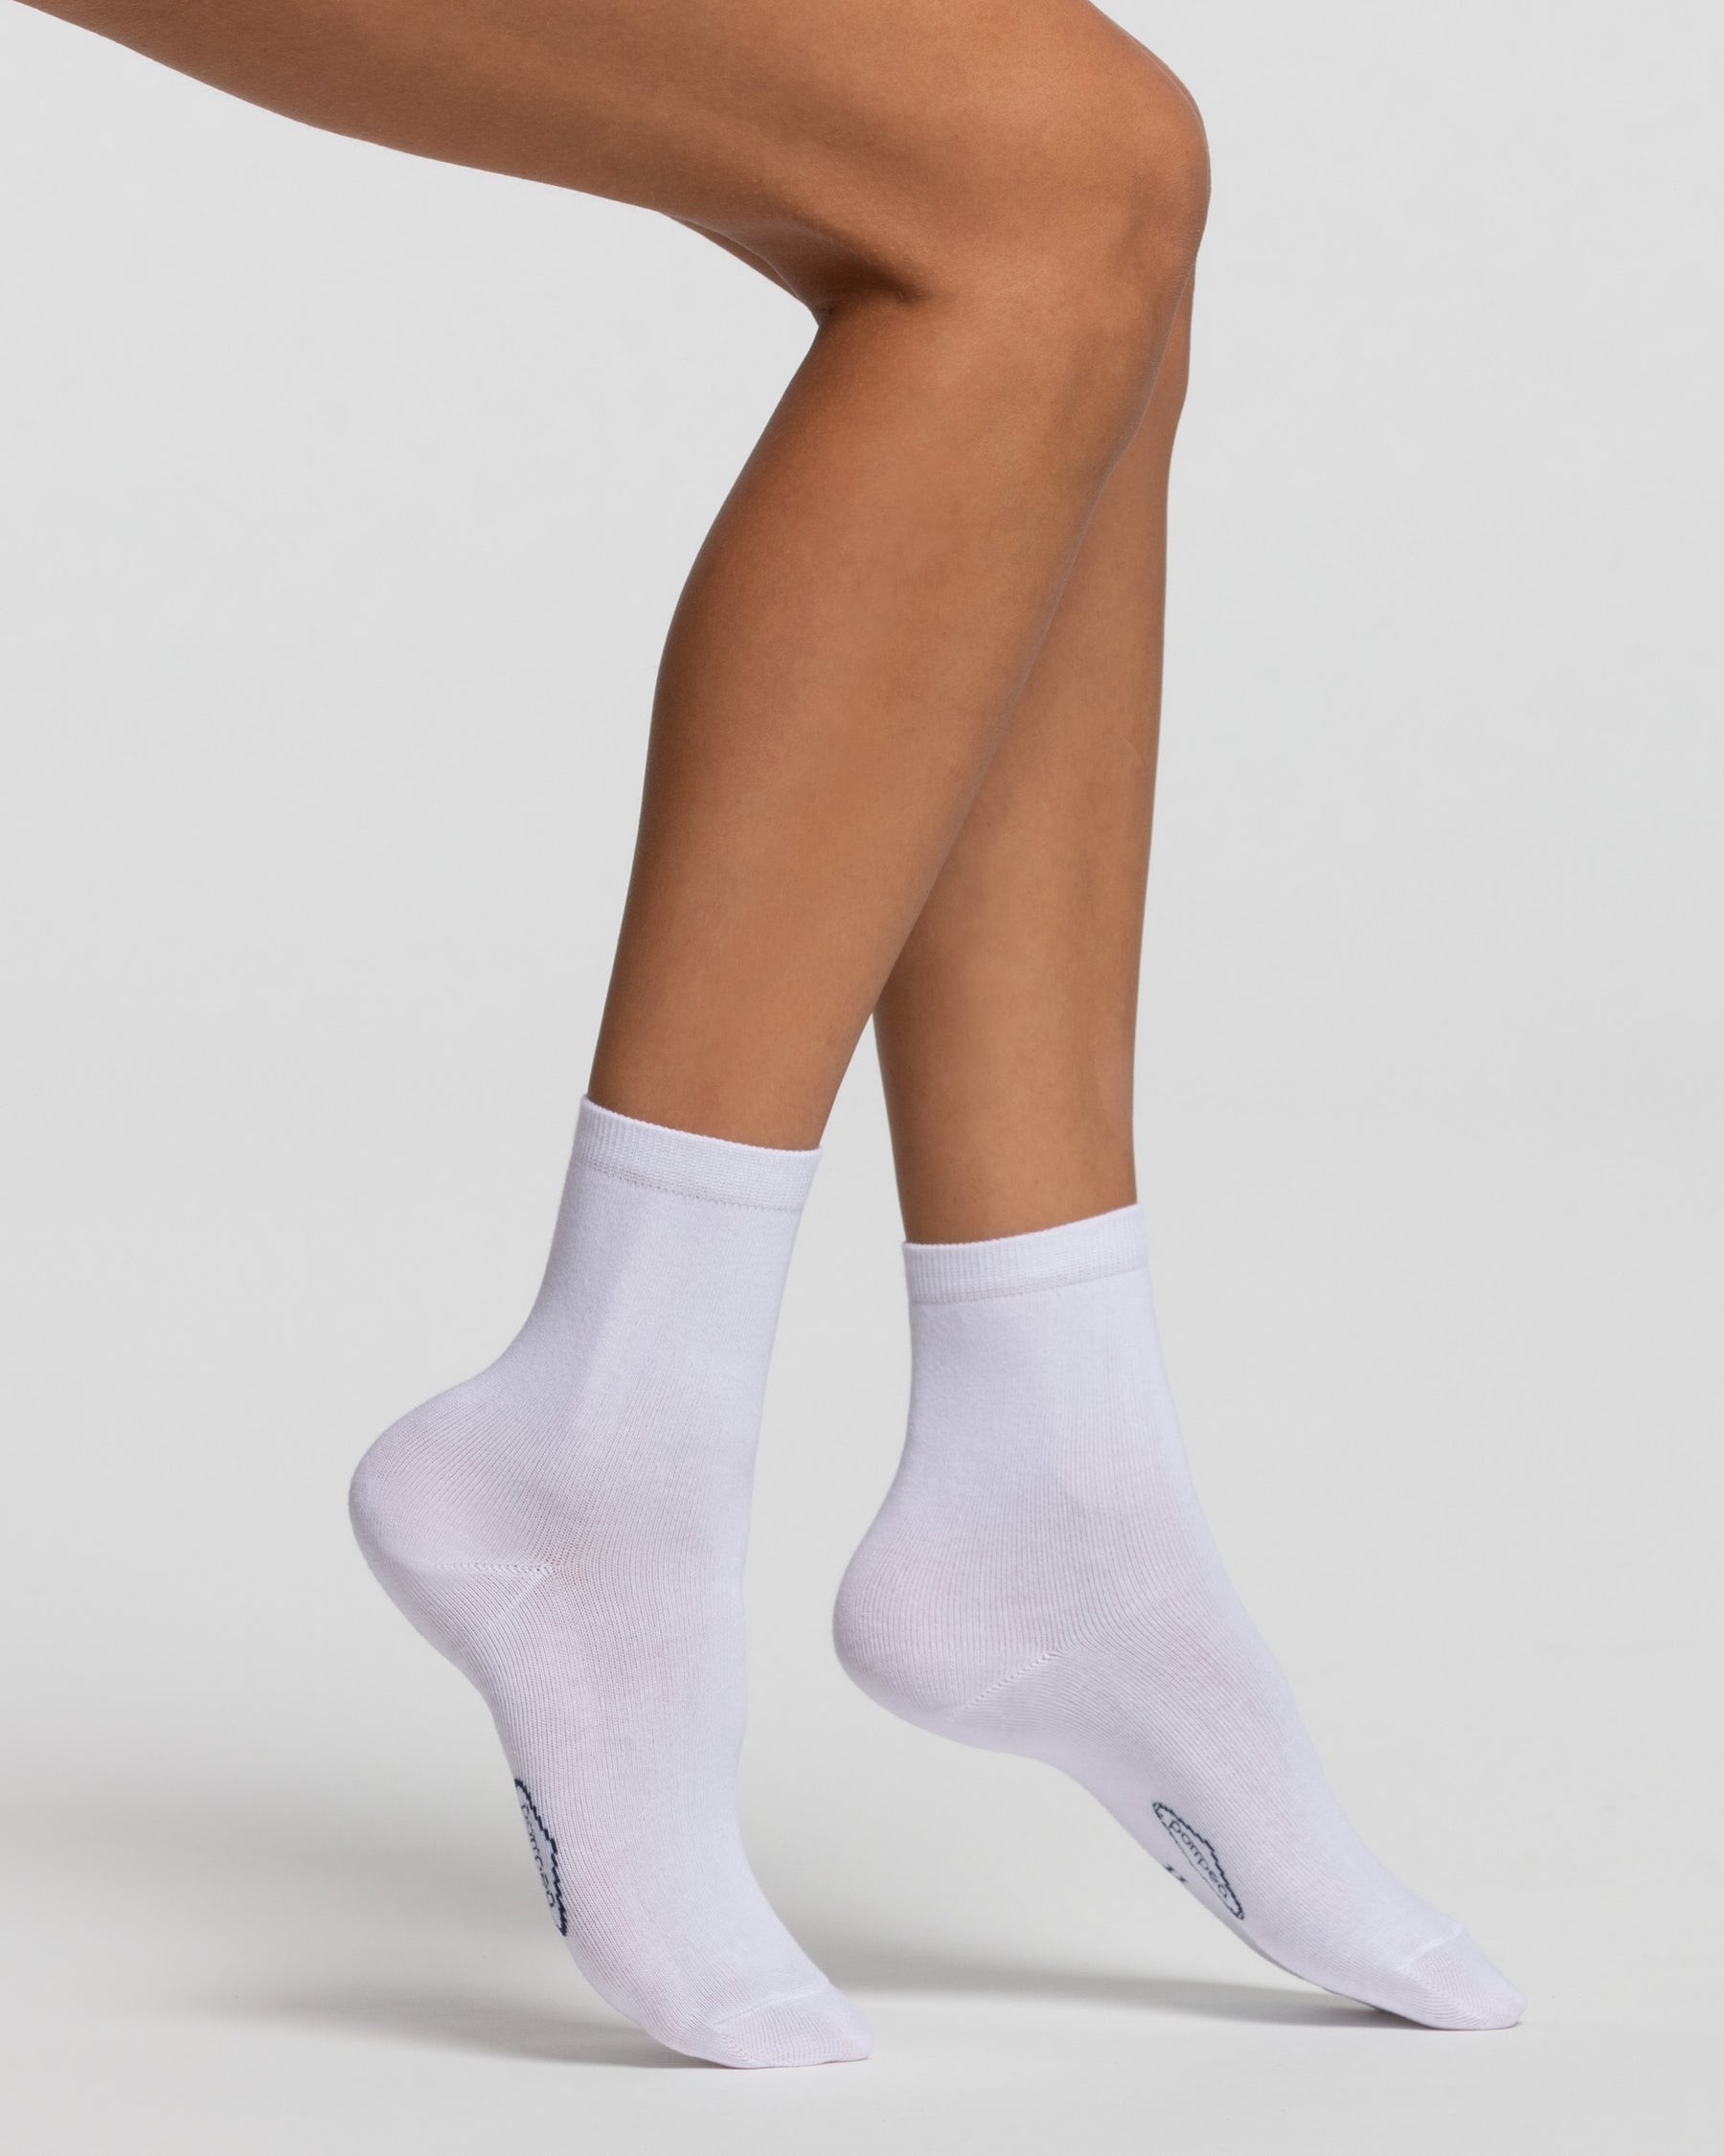 Women's cotton socks 